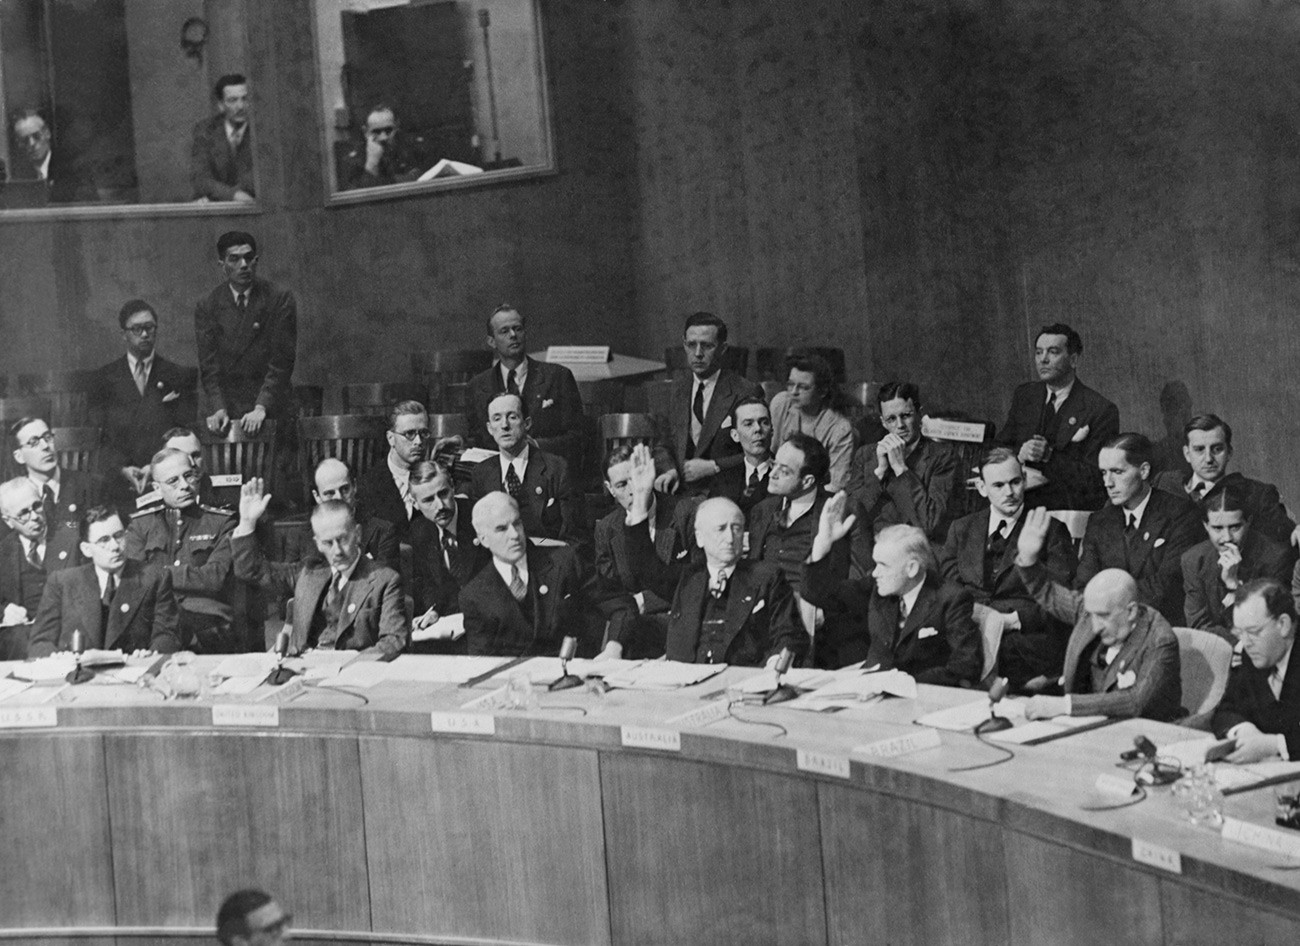 Glasovanje varnostnega sveta Združenih narodov glede nadaljevanja razprave o pogajanjih med Iranom in Sovjetsko zvezo, po tem, ko je ZSSR zahtevala, da se spor prizna za razrešenega.